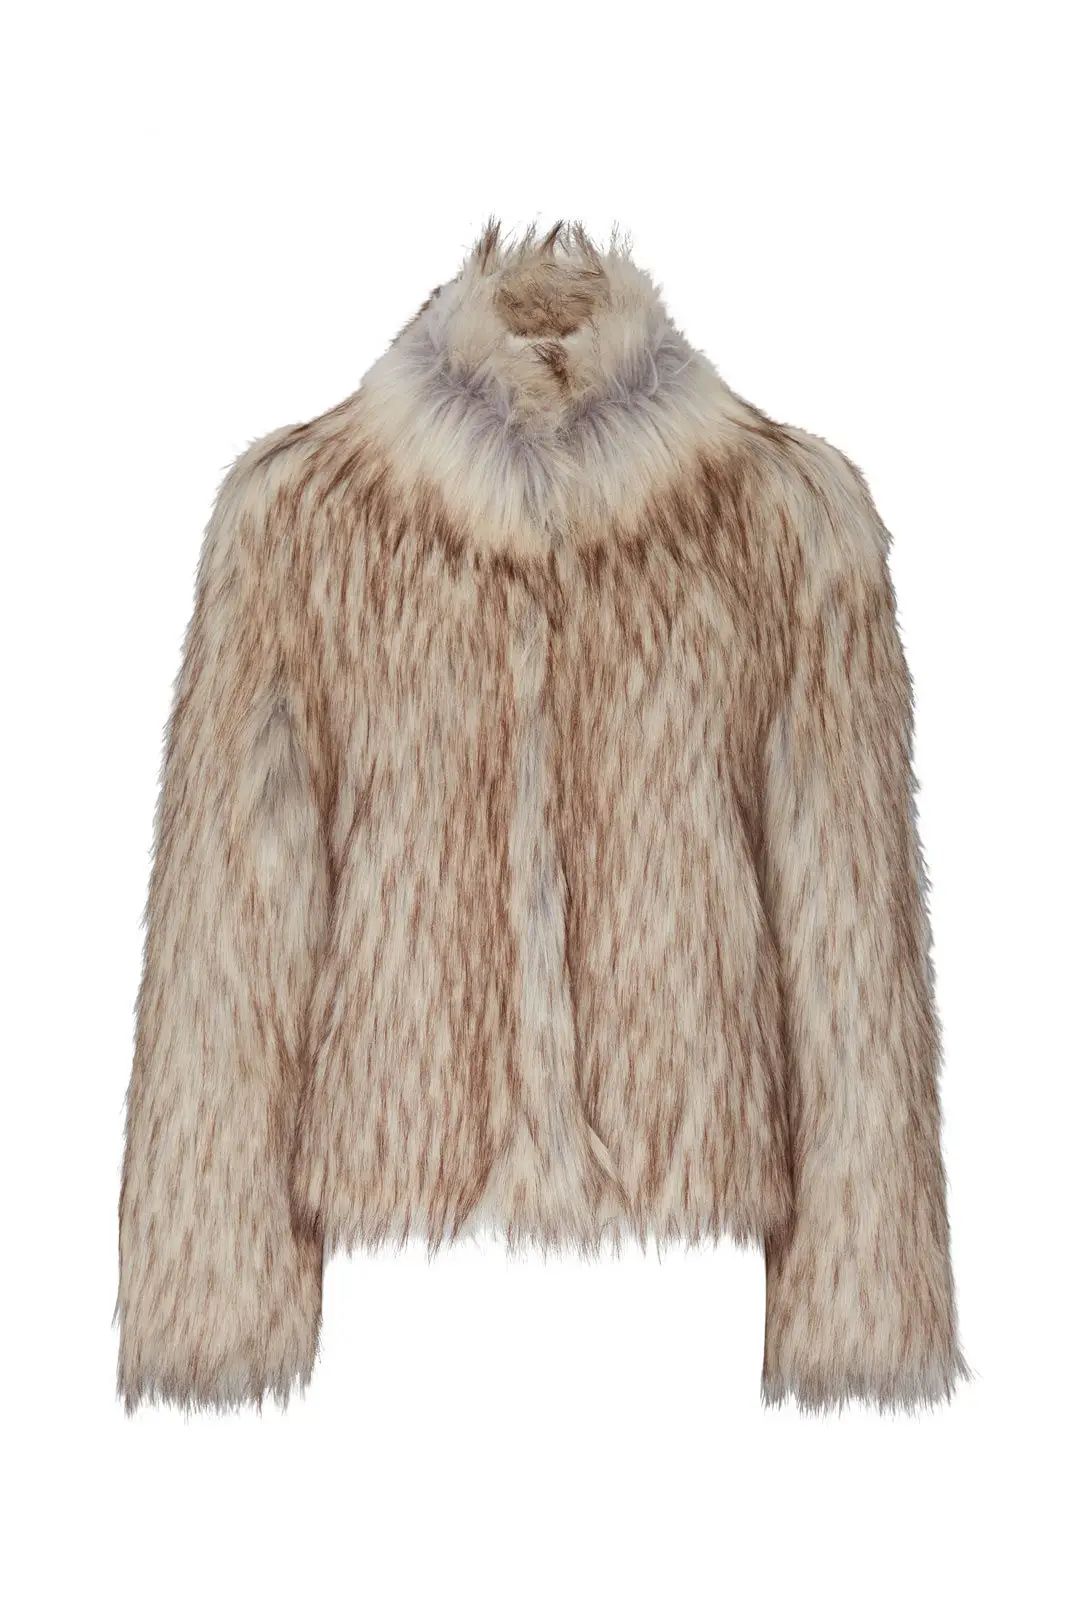 Unreal Fur Natural Faux Fur Delish Jacket | Rent the Runway